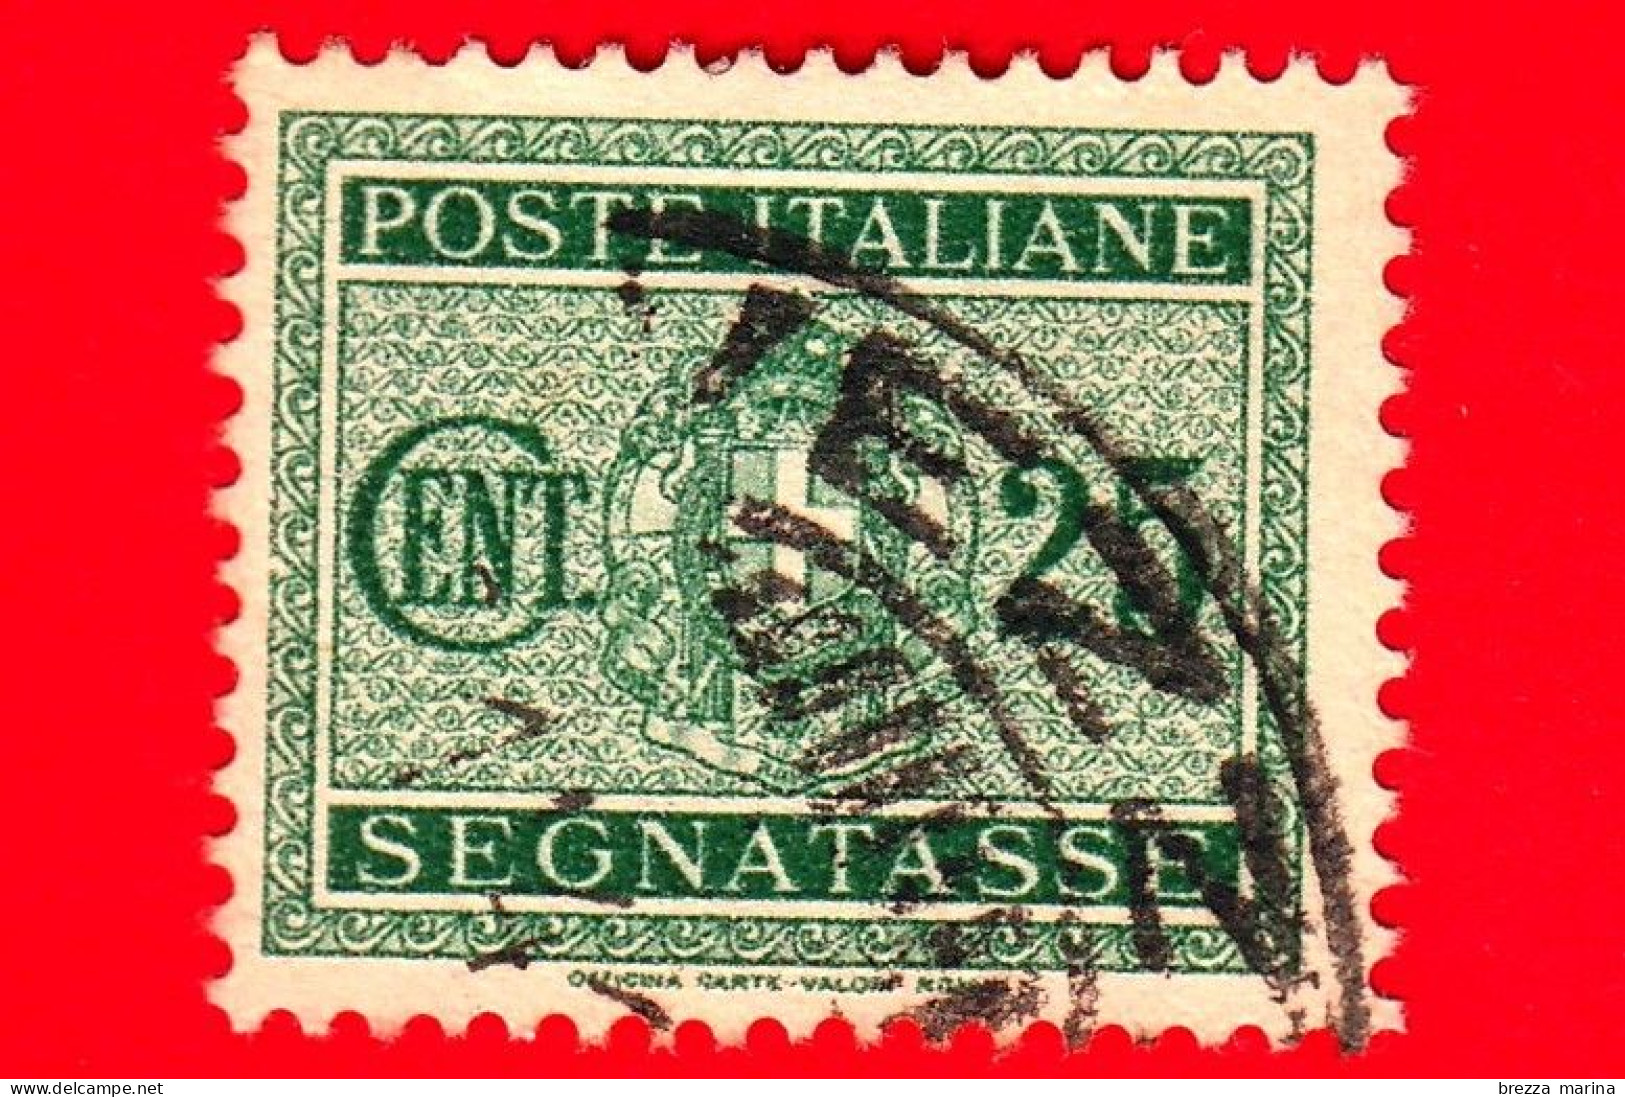 ITALIA - Usato - 1934 - Segnatasse - Fascio Littorio - 25 C. - Postage Due